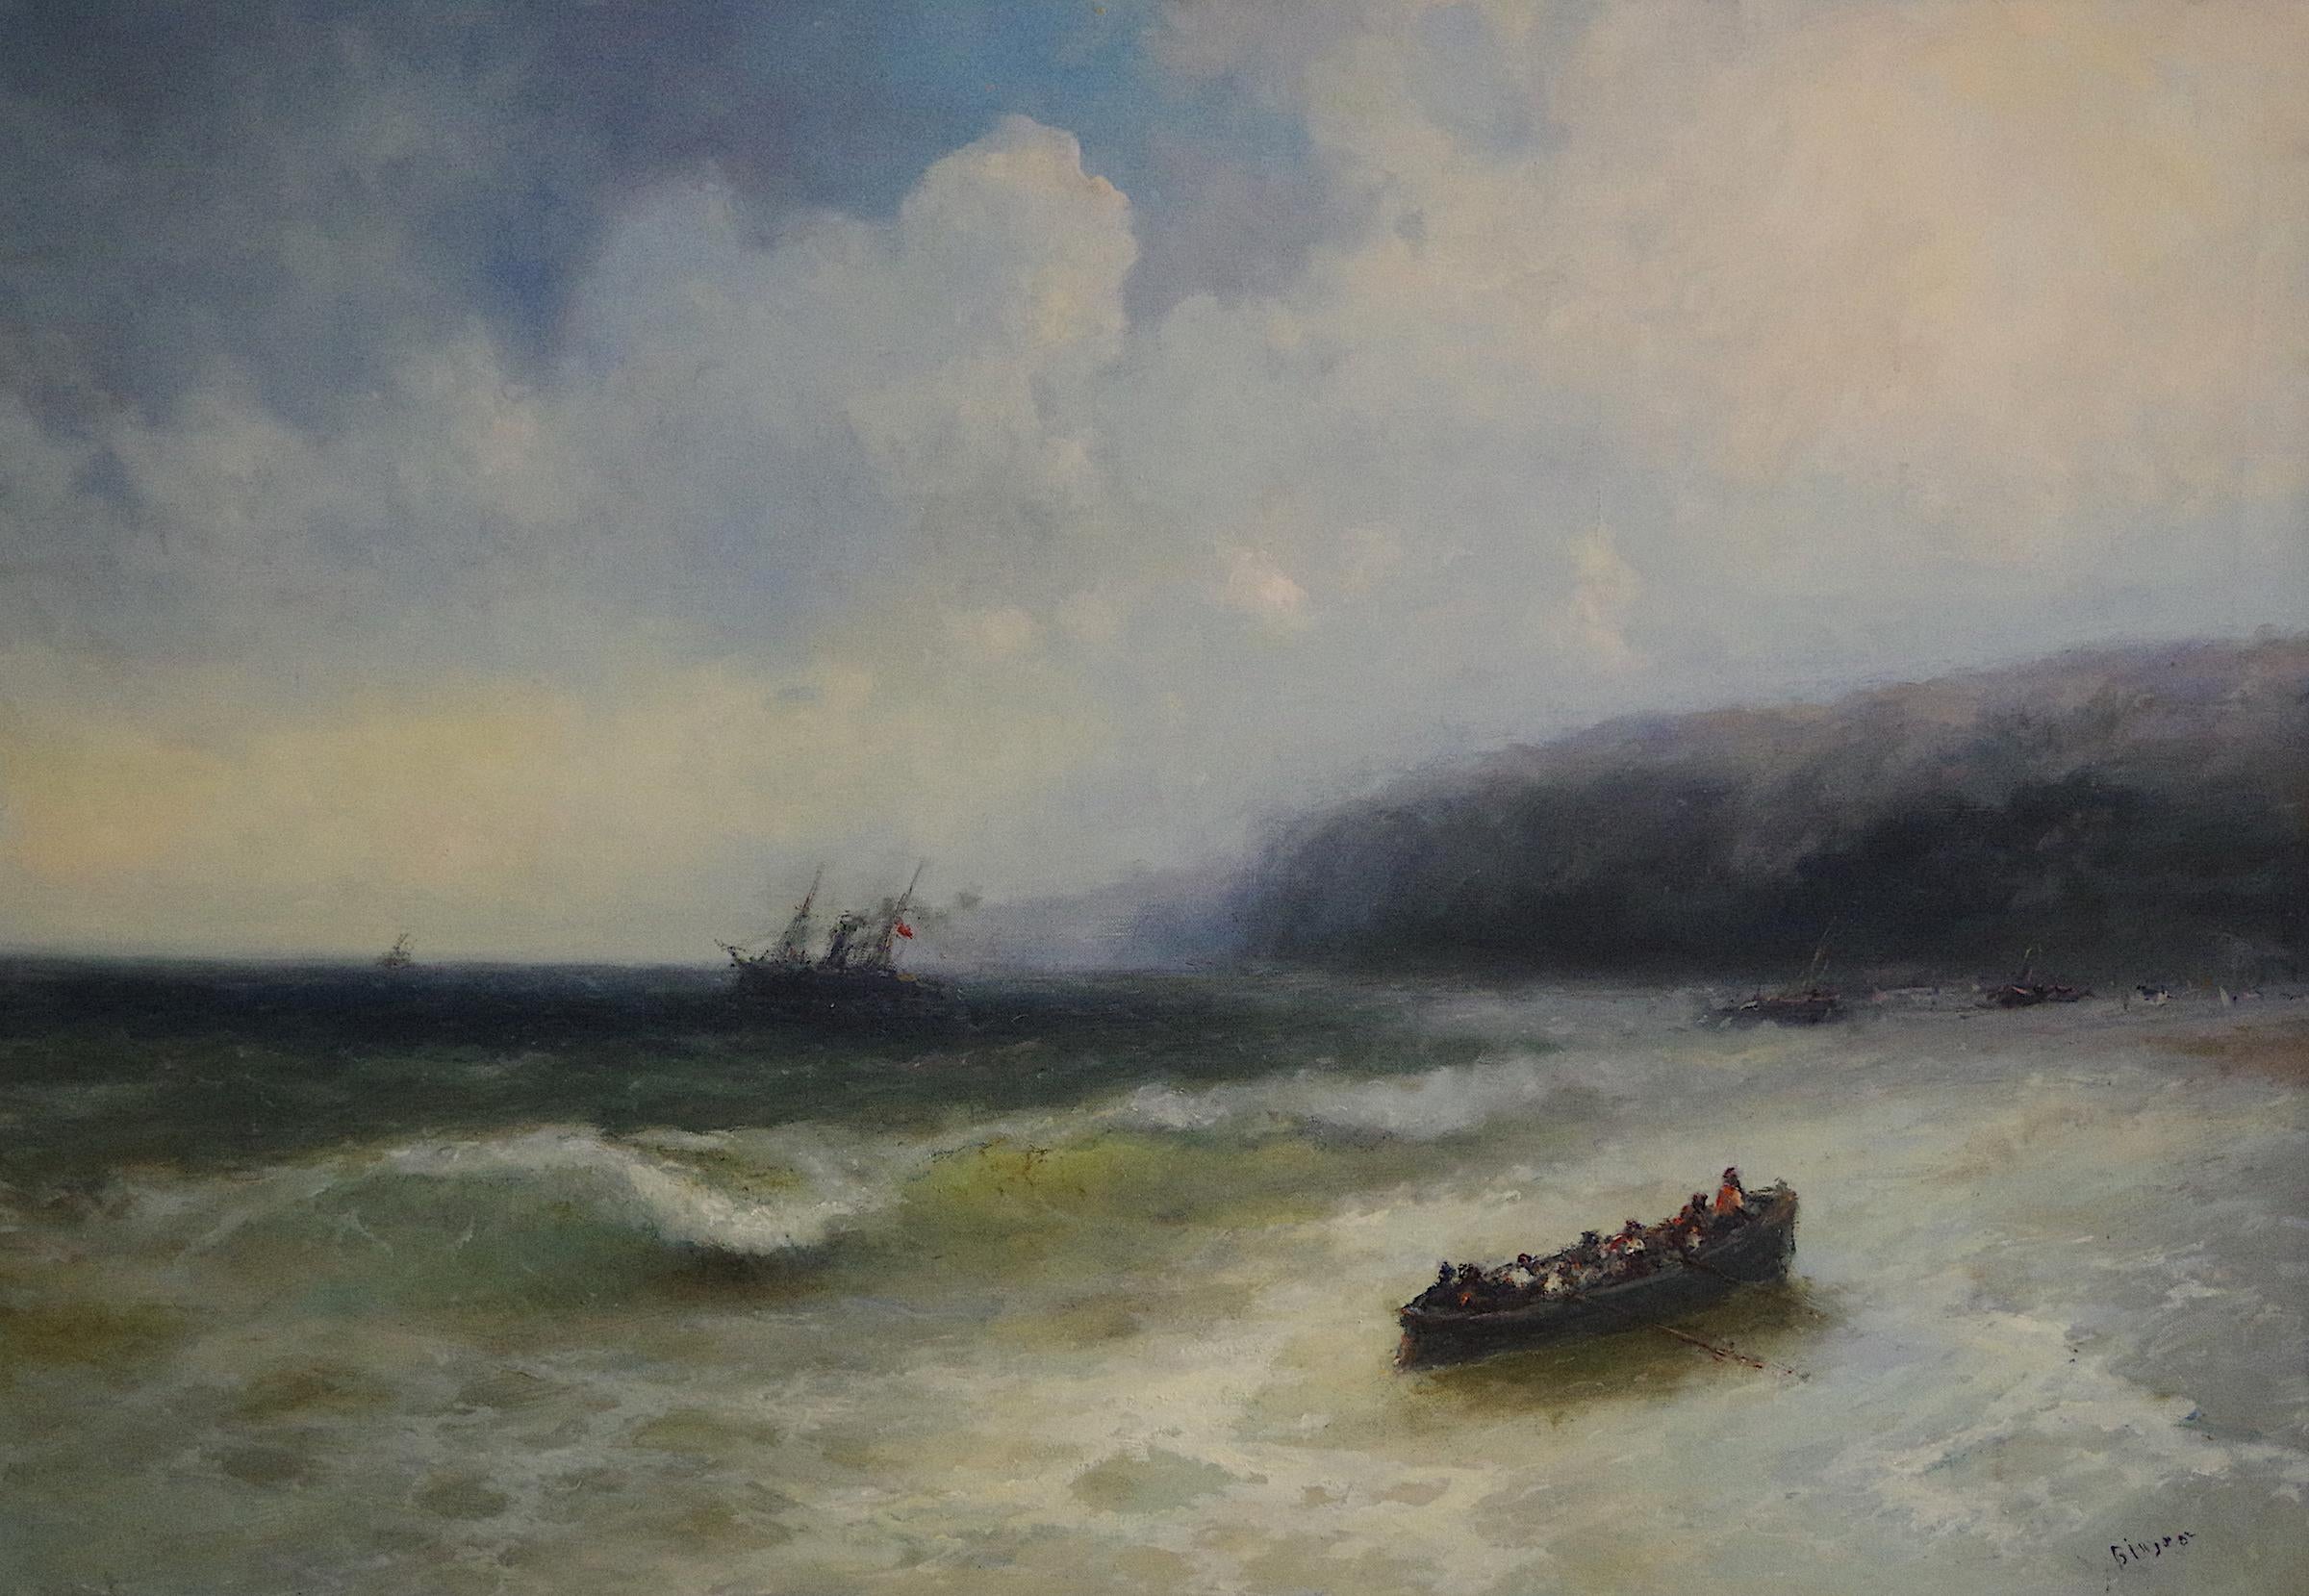 Karen Darbinyan Landscape Painting - Boat on the Ocean